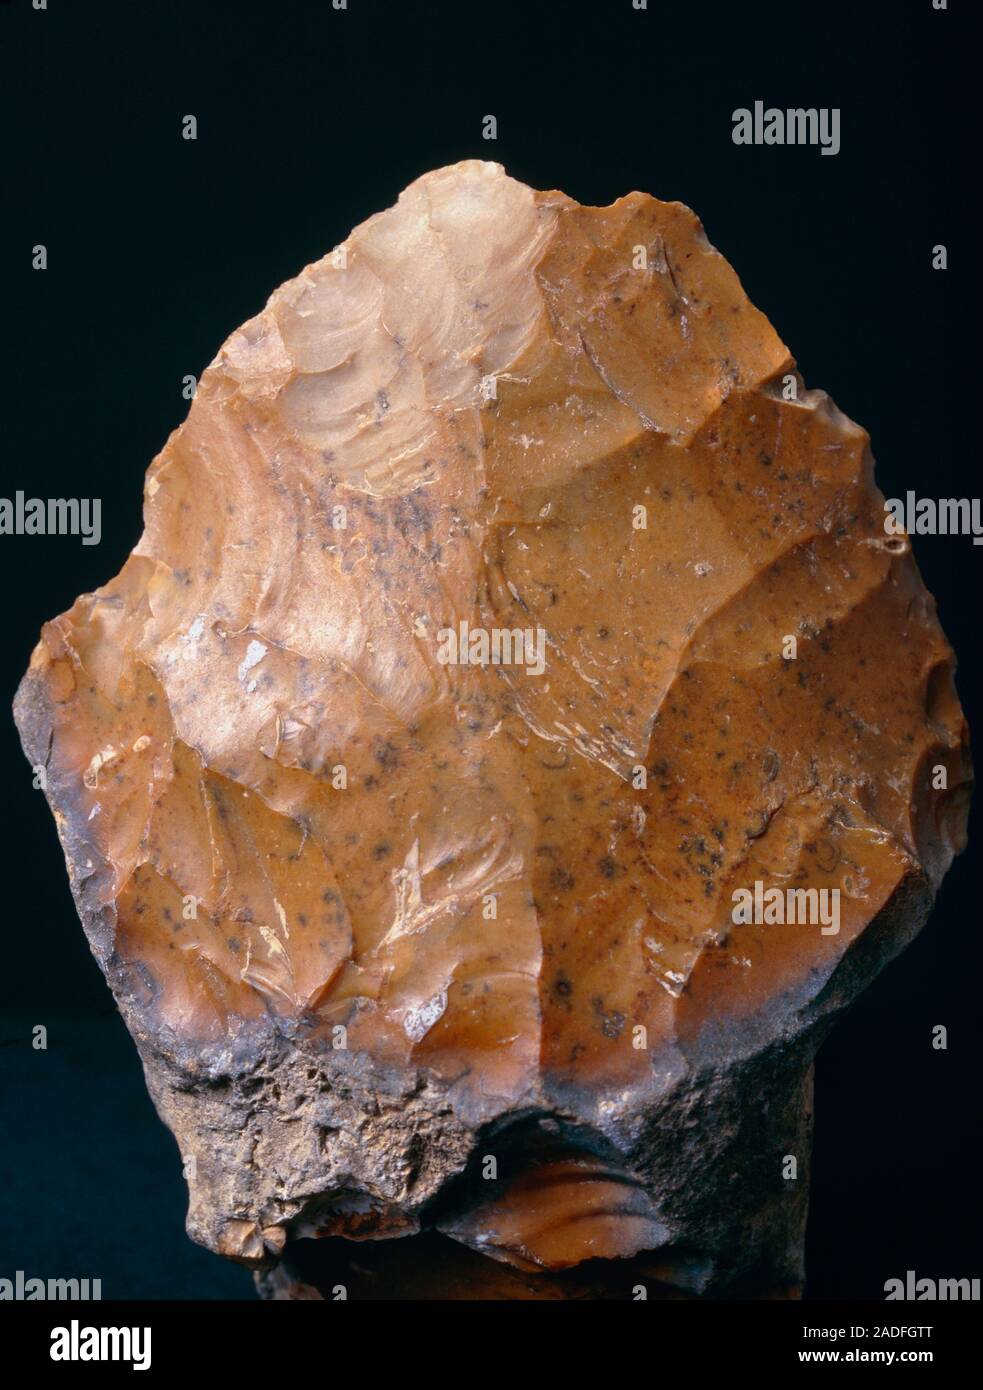 Hacha de mano del paleolítico. El hacha de piedra fue utilizada por los  homínidos (los primeros humanos) para una amplia gama de propósitos, tales  como animales de matanza y tallar madera. Fl